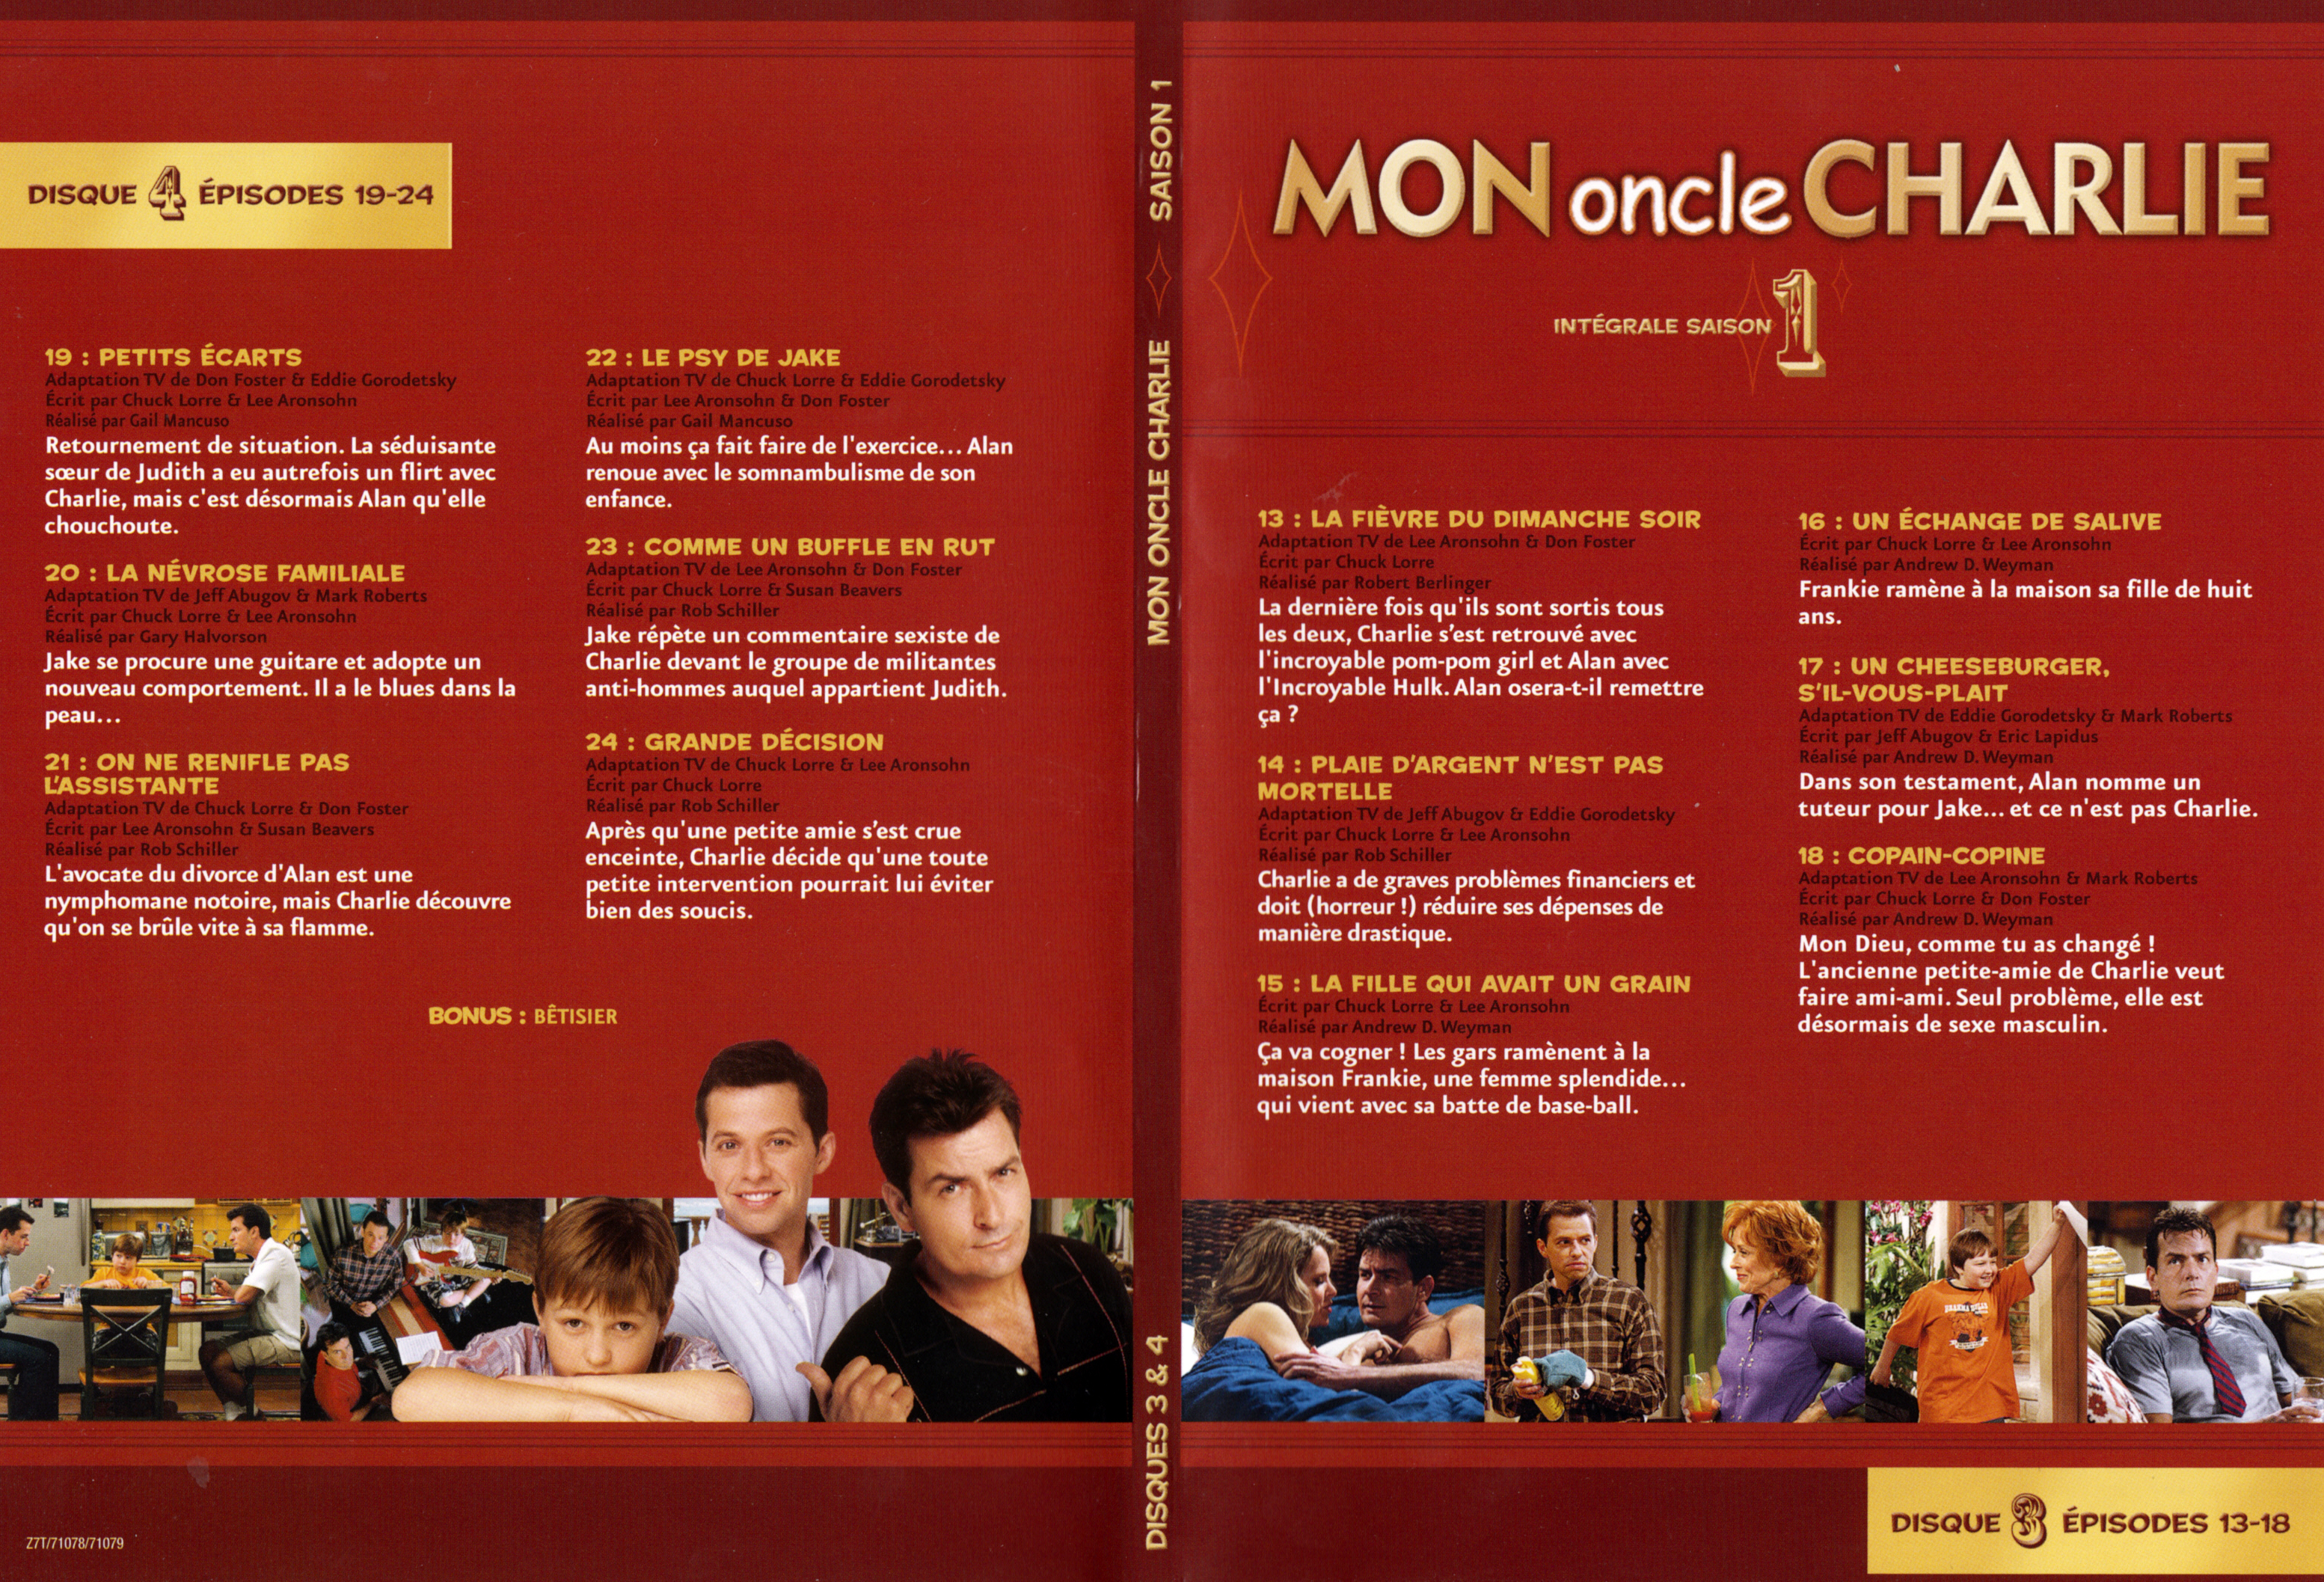 Jaquette DVD Mon oncle Charlie Saison 2 DVD 2 v2